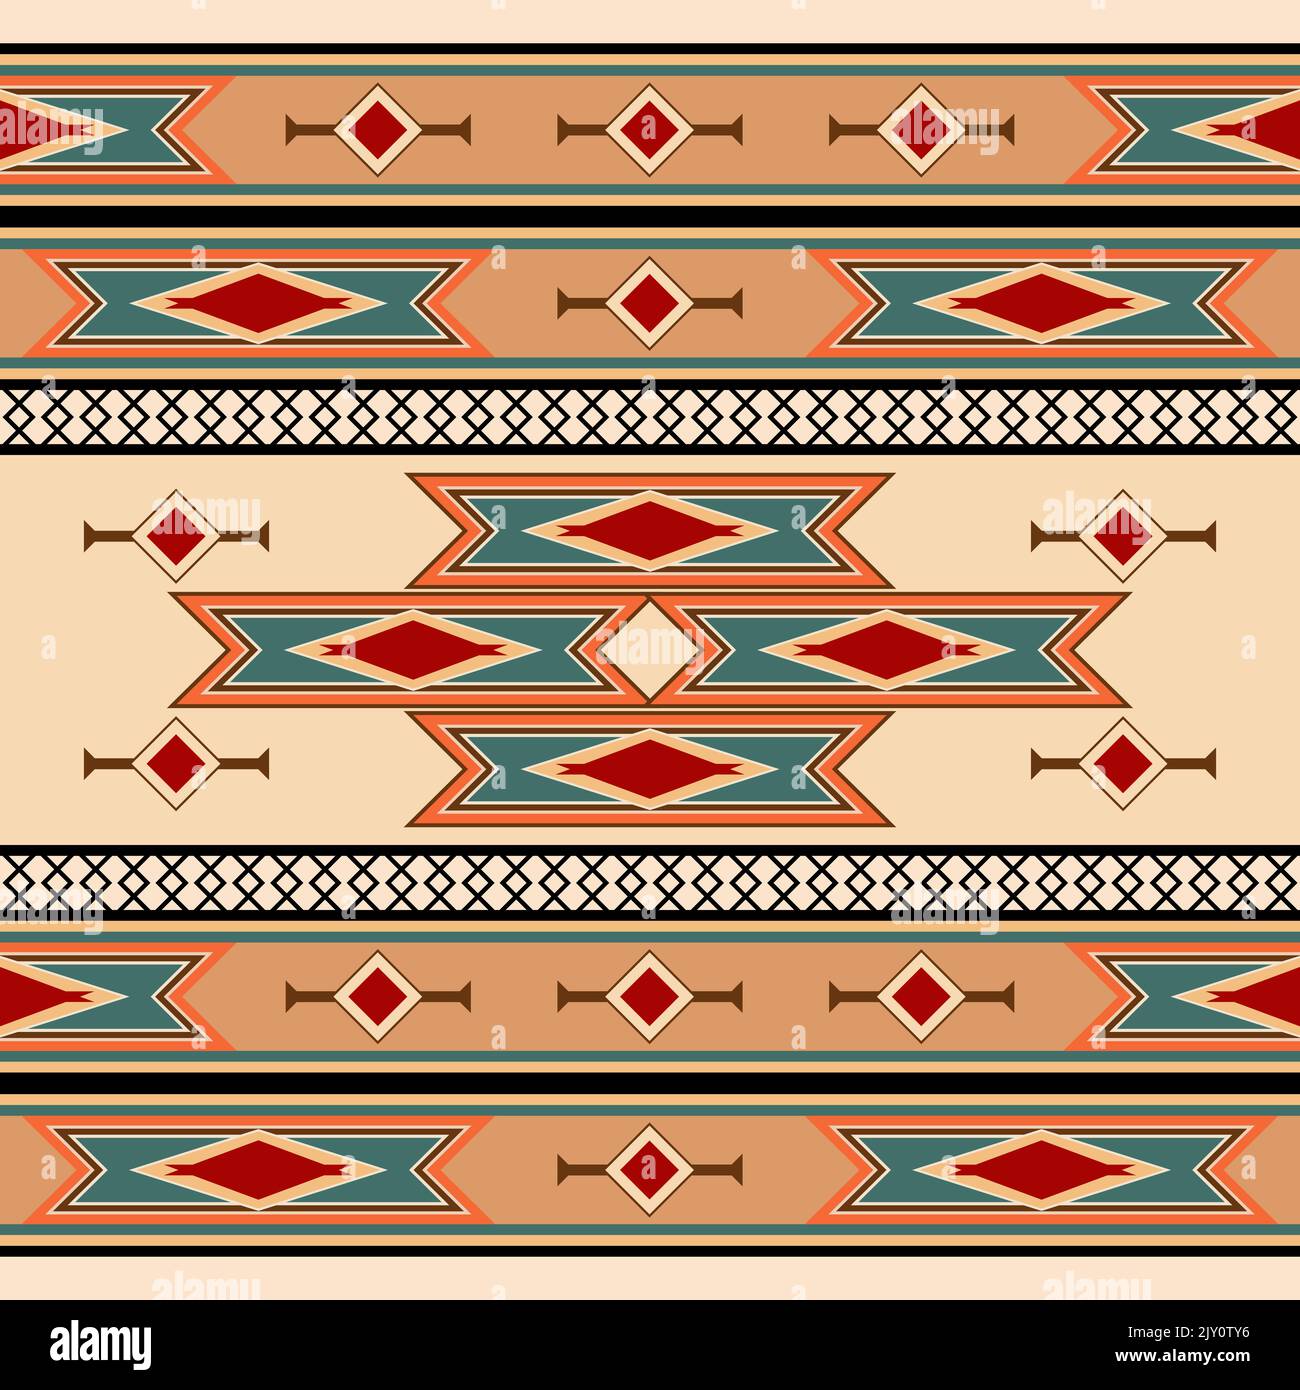 Abstraktes Nahtloses Muster im American Southwest Design Stil - Vektor Illustration Stock Vektor